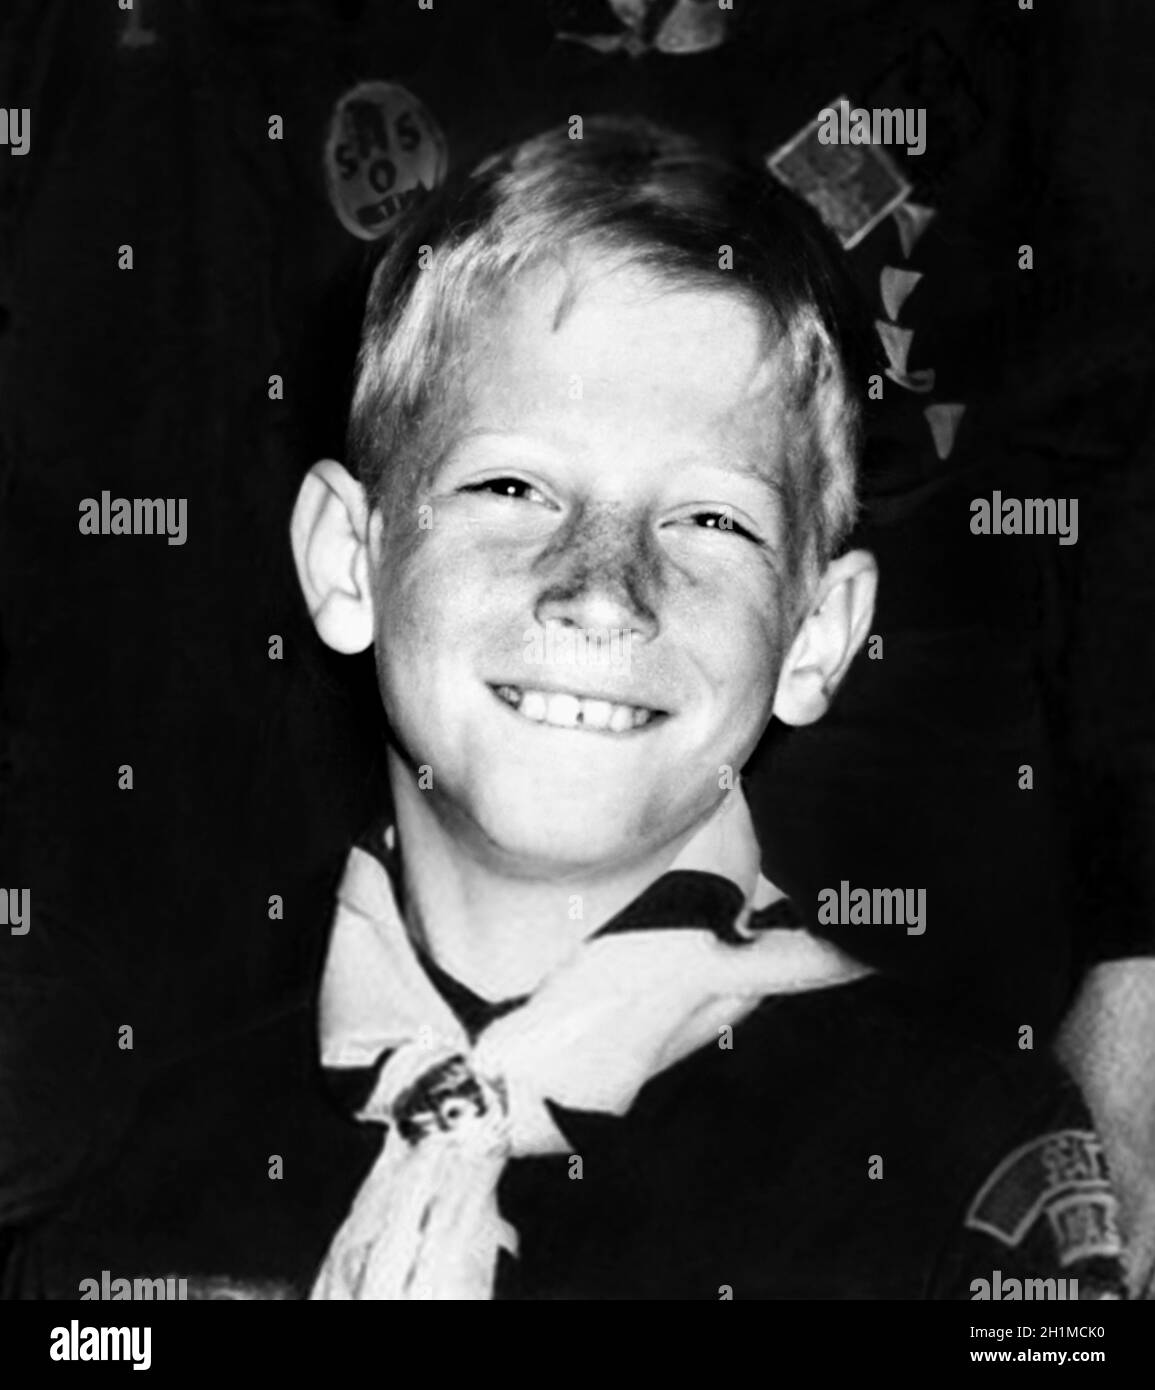 1965 CA, Etats-Unis : le célèbre BILL GATES ( bo?rn à Seattle, 28 octobre 1955? )Quand était un jeune garçon âgé de 10 ans dans un groupe de scouts garçons.Magnat américain , investisseur et propriétaire de médias fondateur de WINDOWS MICROSOFT Company .Photographe inconnu .- INFORMATICA - INFORMATICO - INFORMATIQUE - INFORMATIQUE - INVENTORE - INVENTEUR - HISTOIRE - FOTO STORICHE - TYCOON - personalità da bambino bambini da giovane - personnalité personnalités quand était jeune - INFANZIA - ENFANCE - BAMBINO - BAMBINI - ENFANTS - ENFANT - sourire -sorriso --- ARCHIVIO GBB Banque D'Images